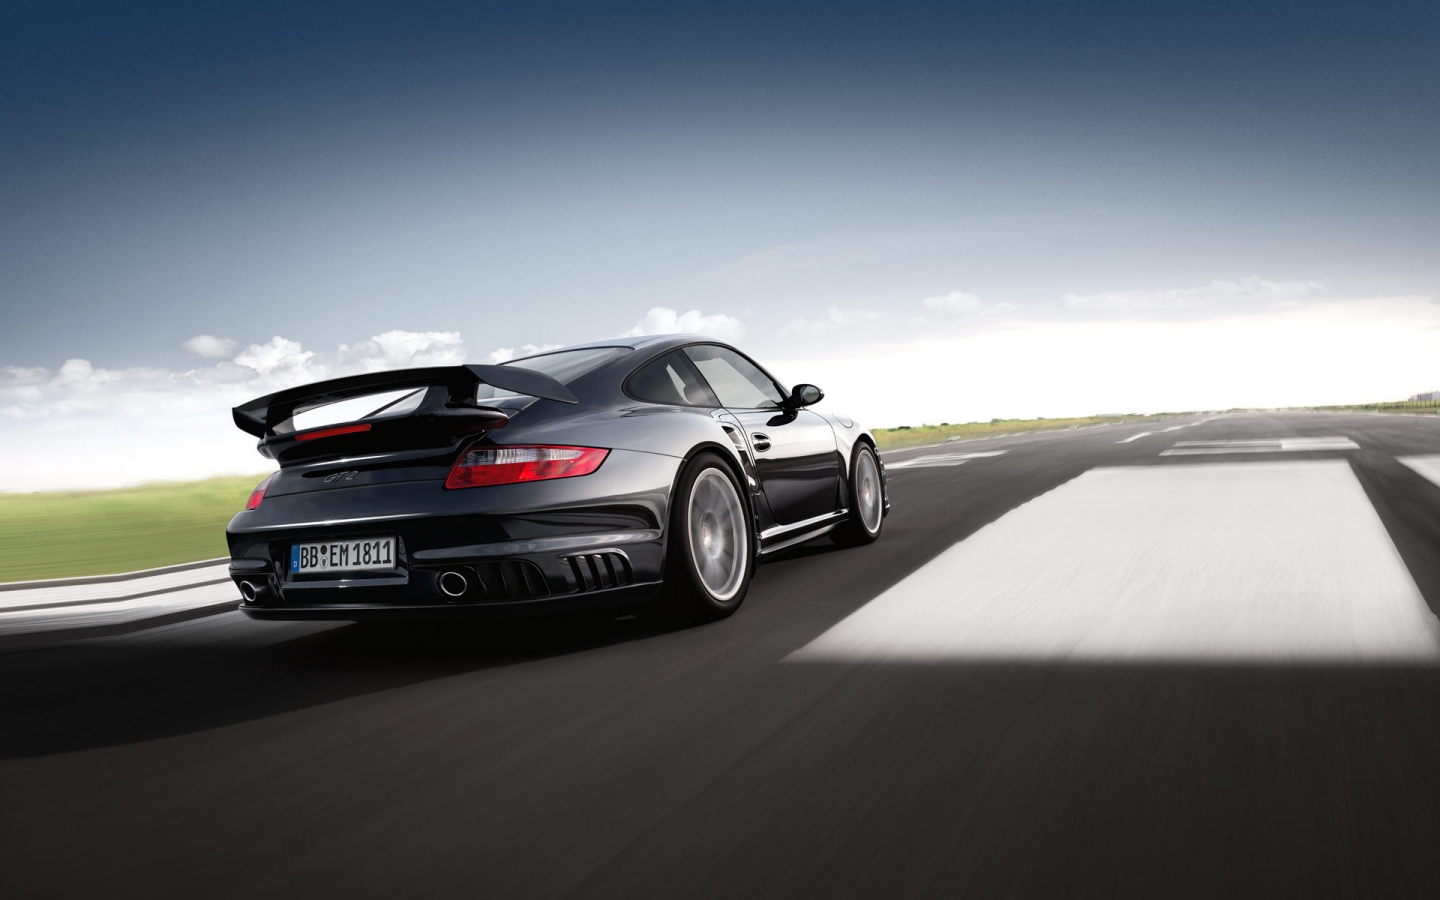 Porsche 911 GT2 for 1440 x 900 widescreen resolution